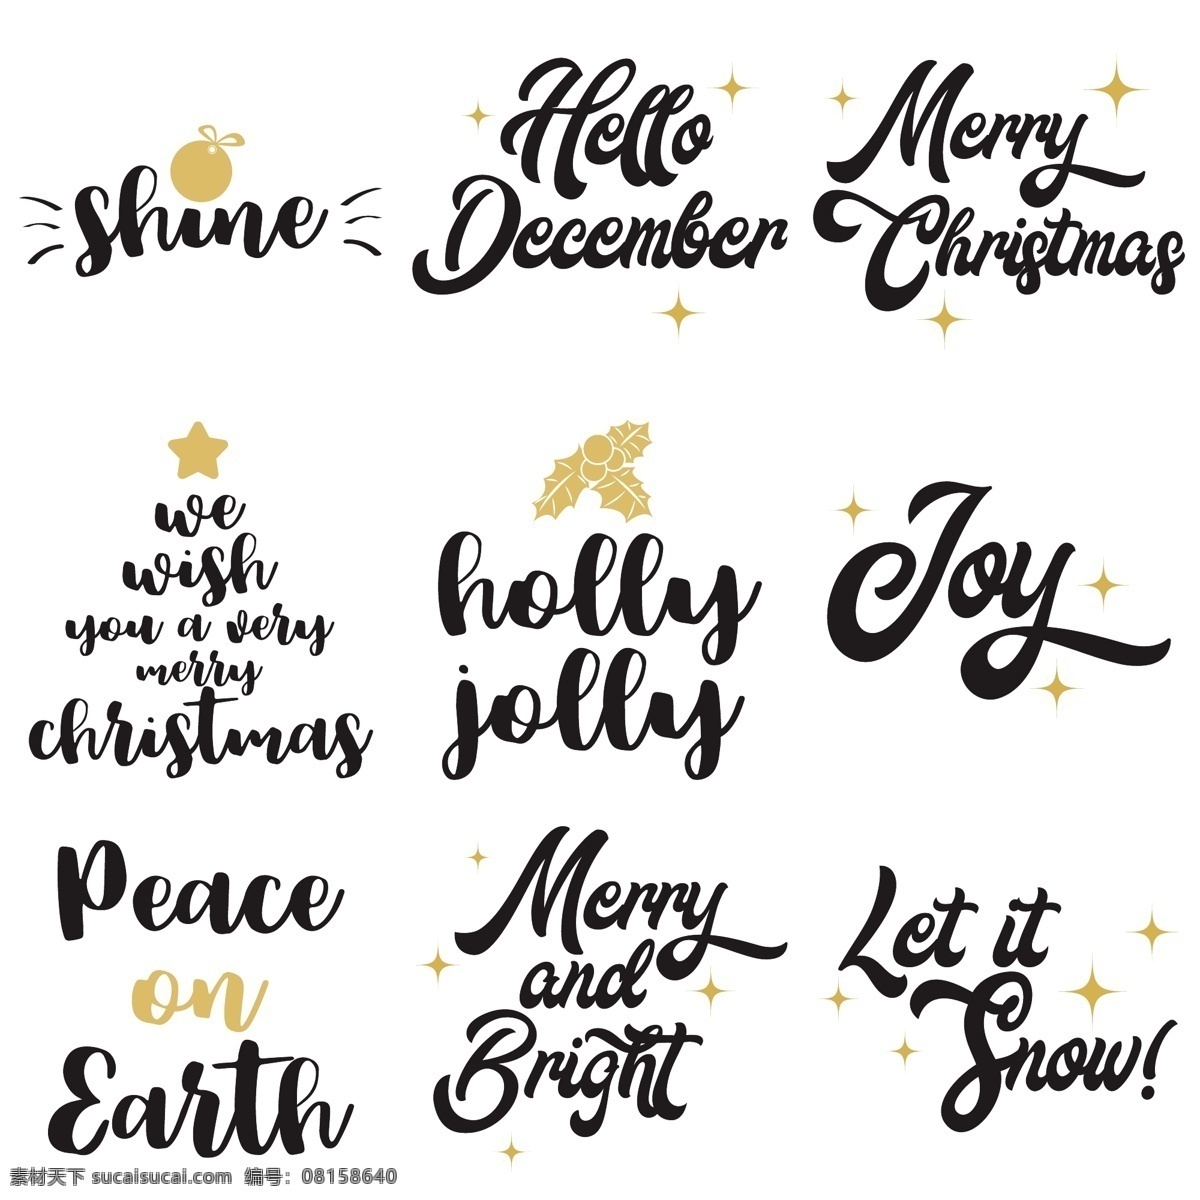 圣诞节 艺术 字体 艺术字体 圣诞节标签 标志 图标 圣诞节字体 英文字体 字体设计 圣诞快乐